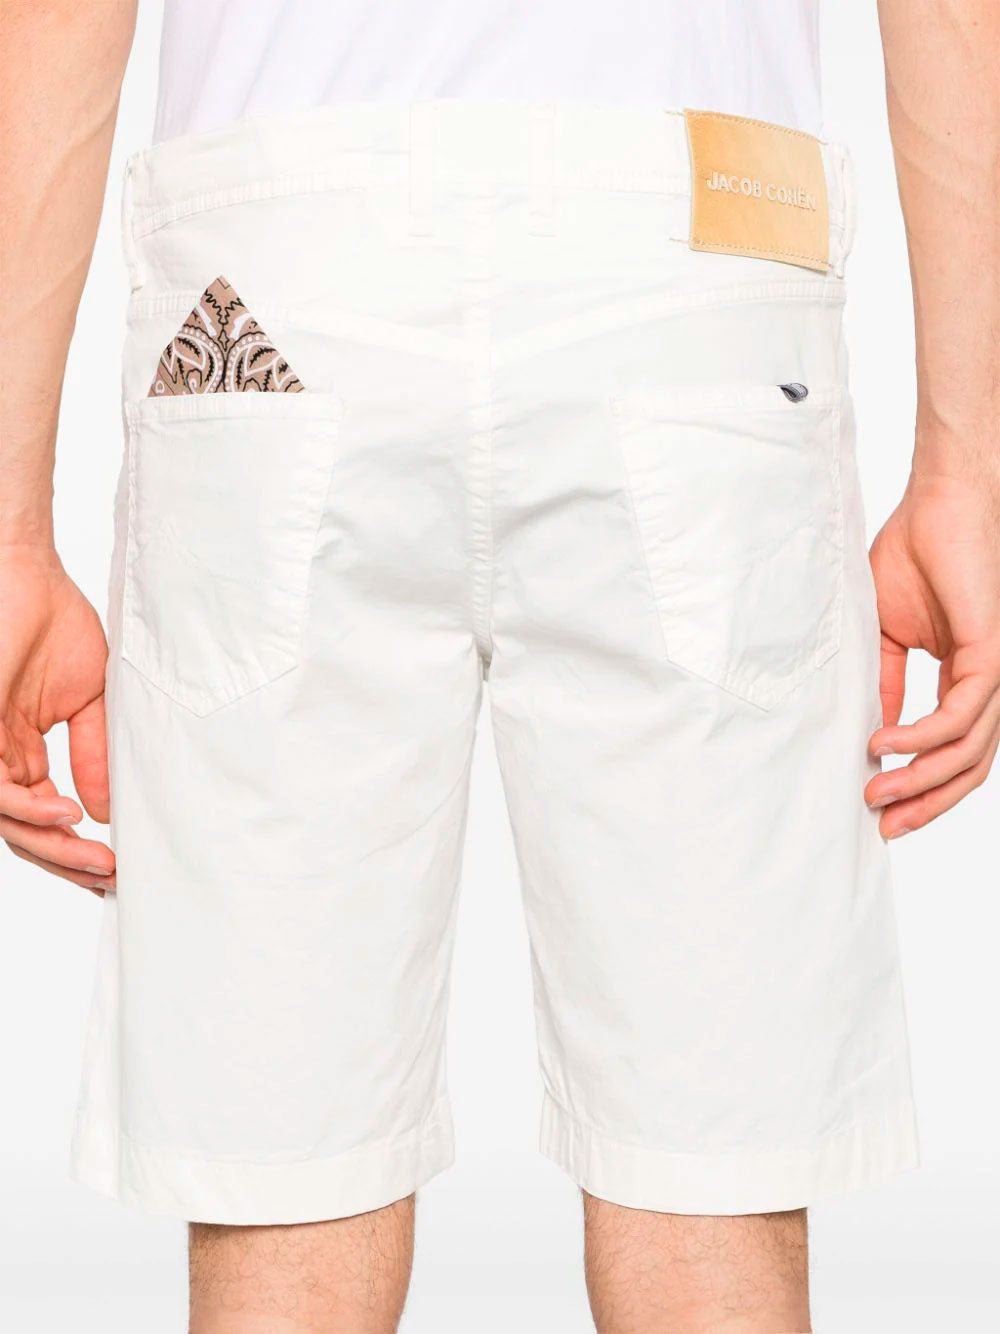 Nicolas bermuda shorts